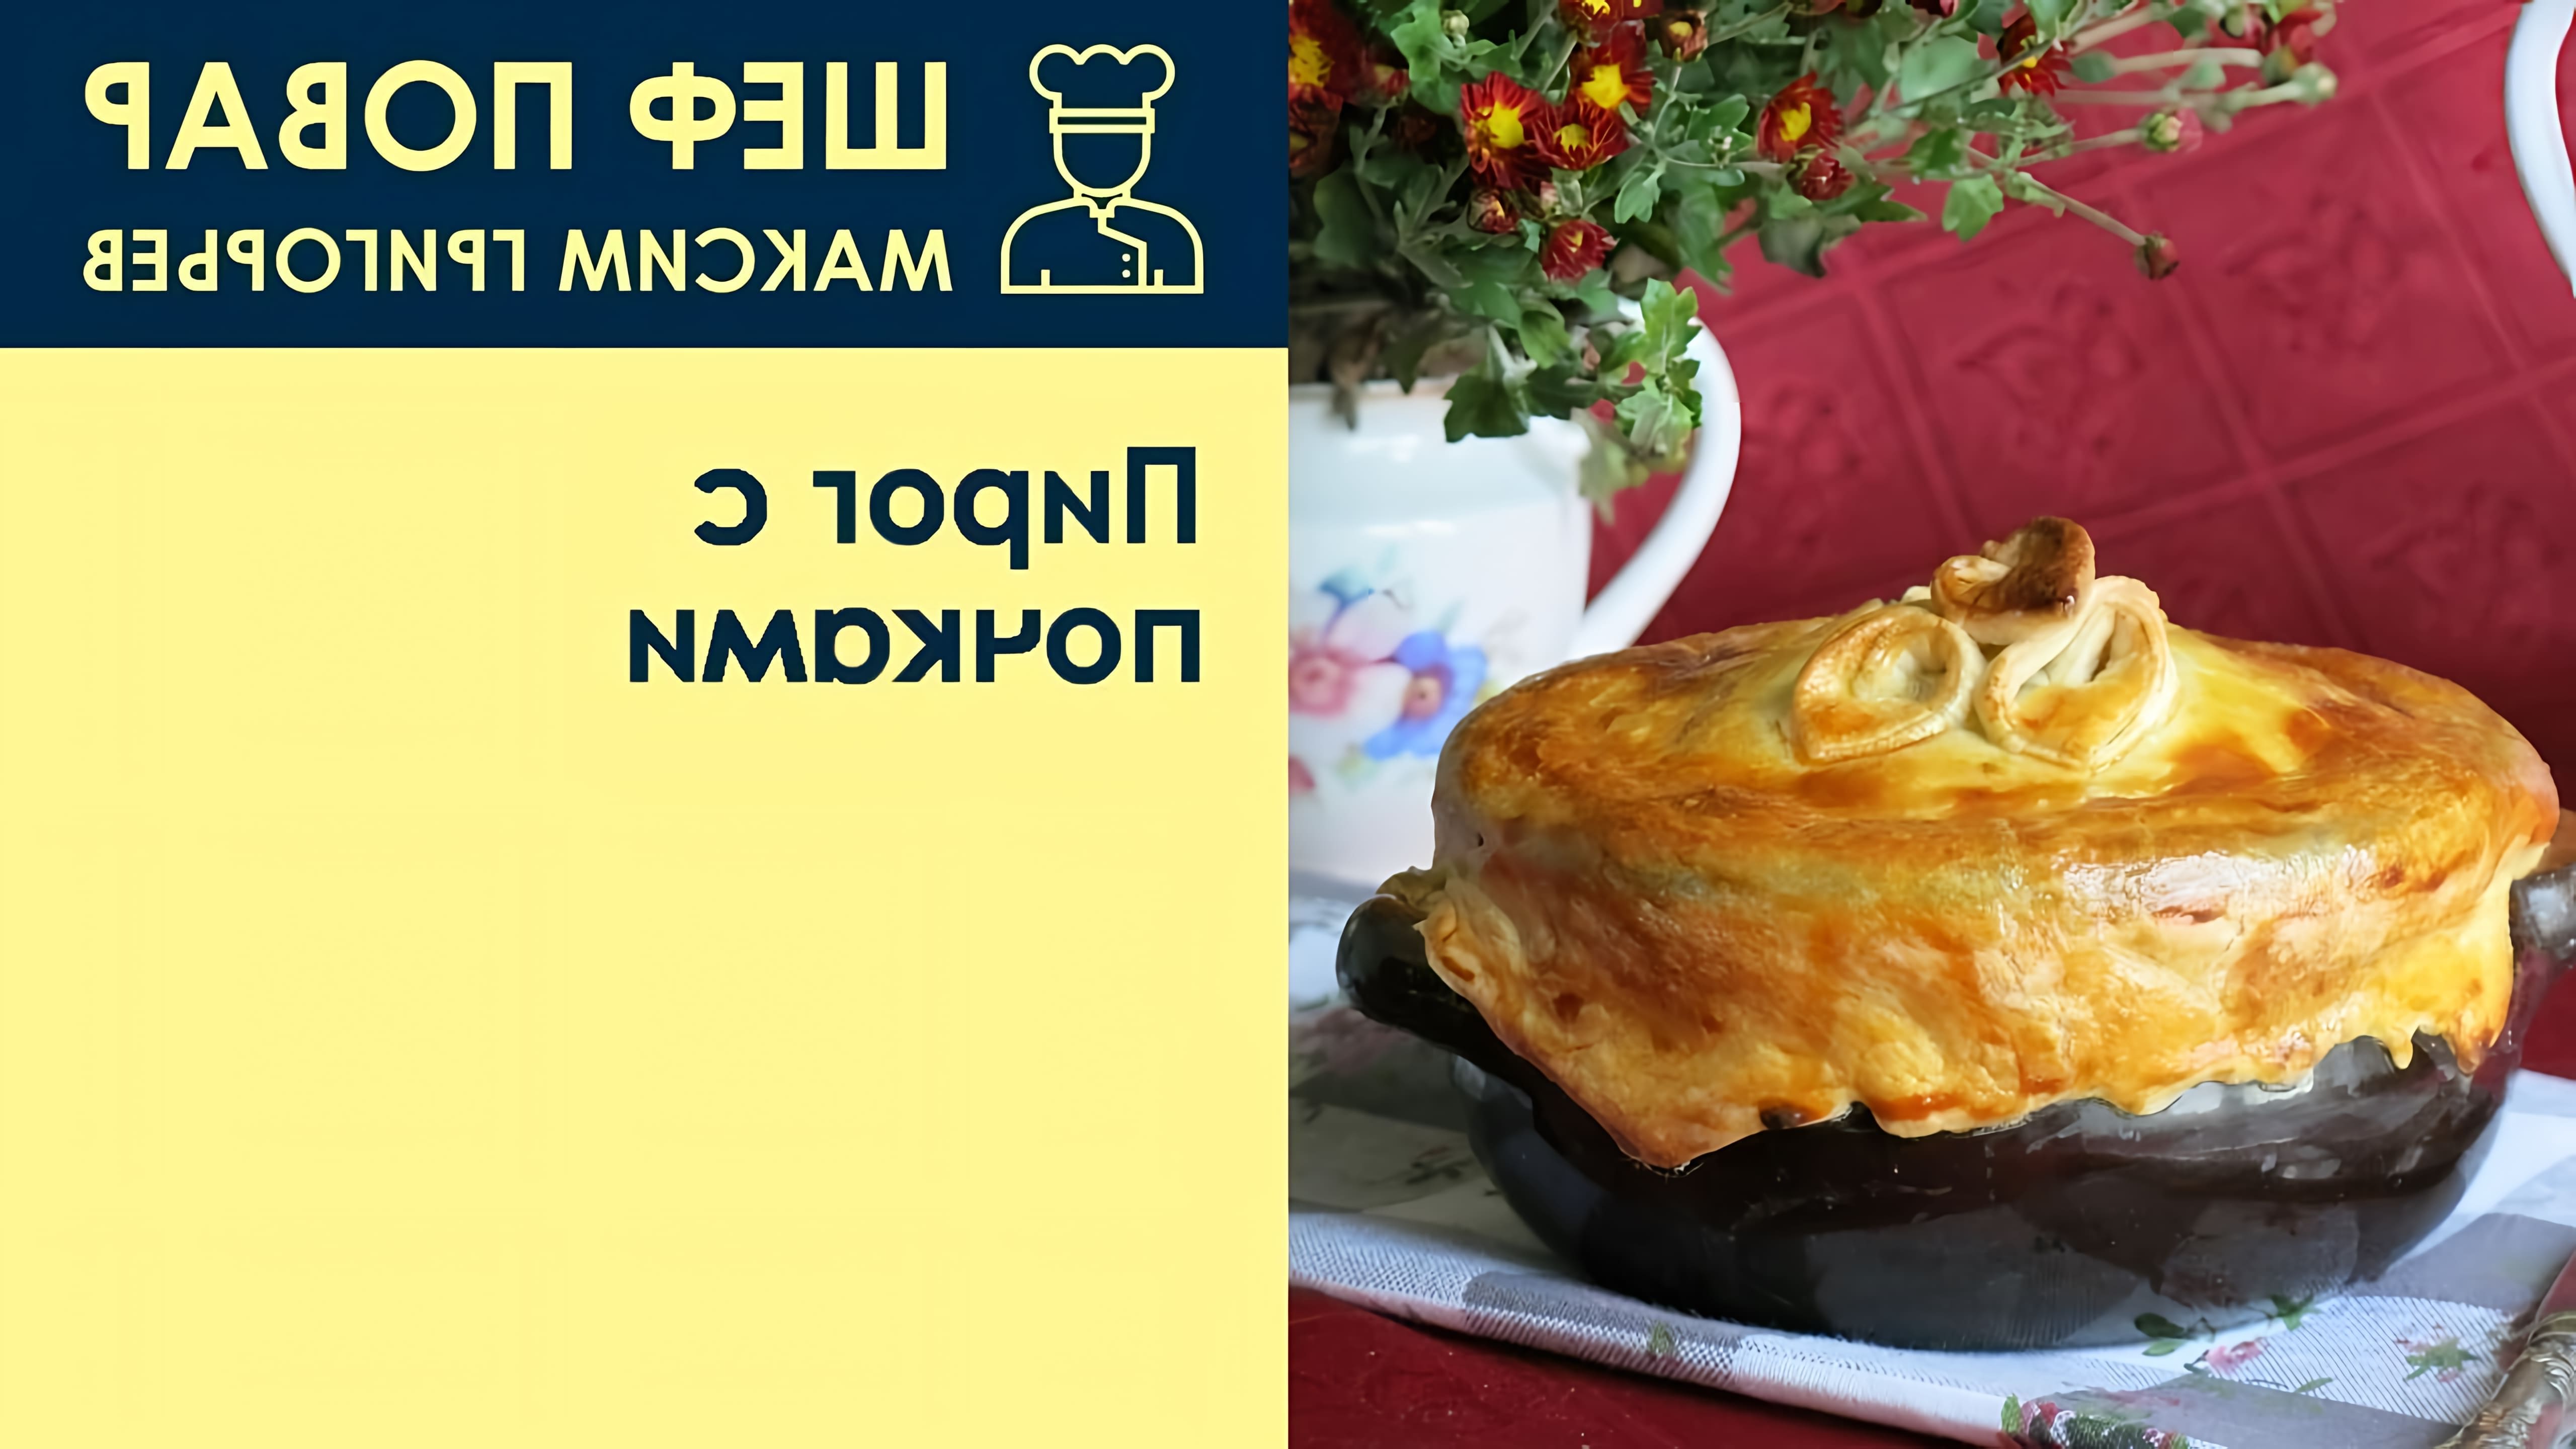 В этом видео шеф-повар Максим Григорьев показывает, как приготовить пирог с почками, который является традиционным английским блюдом